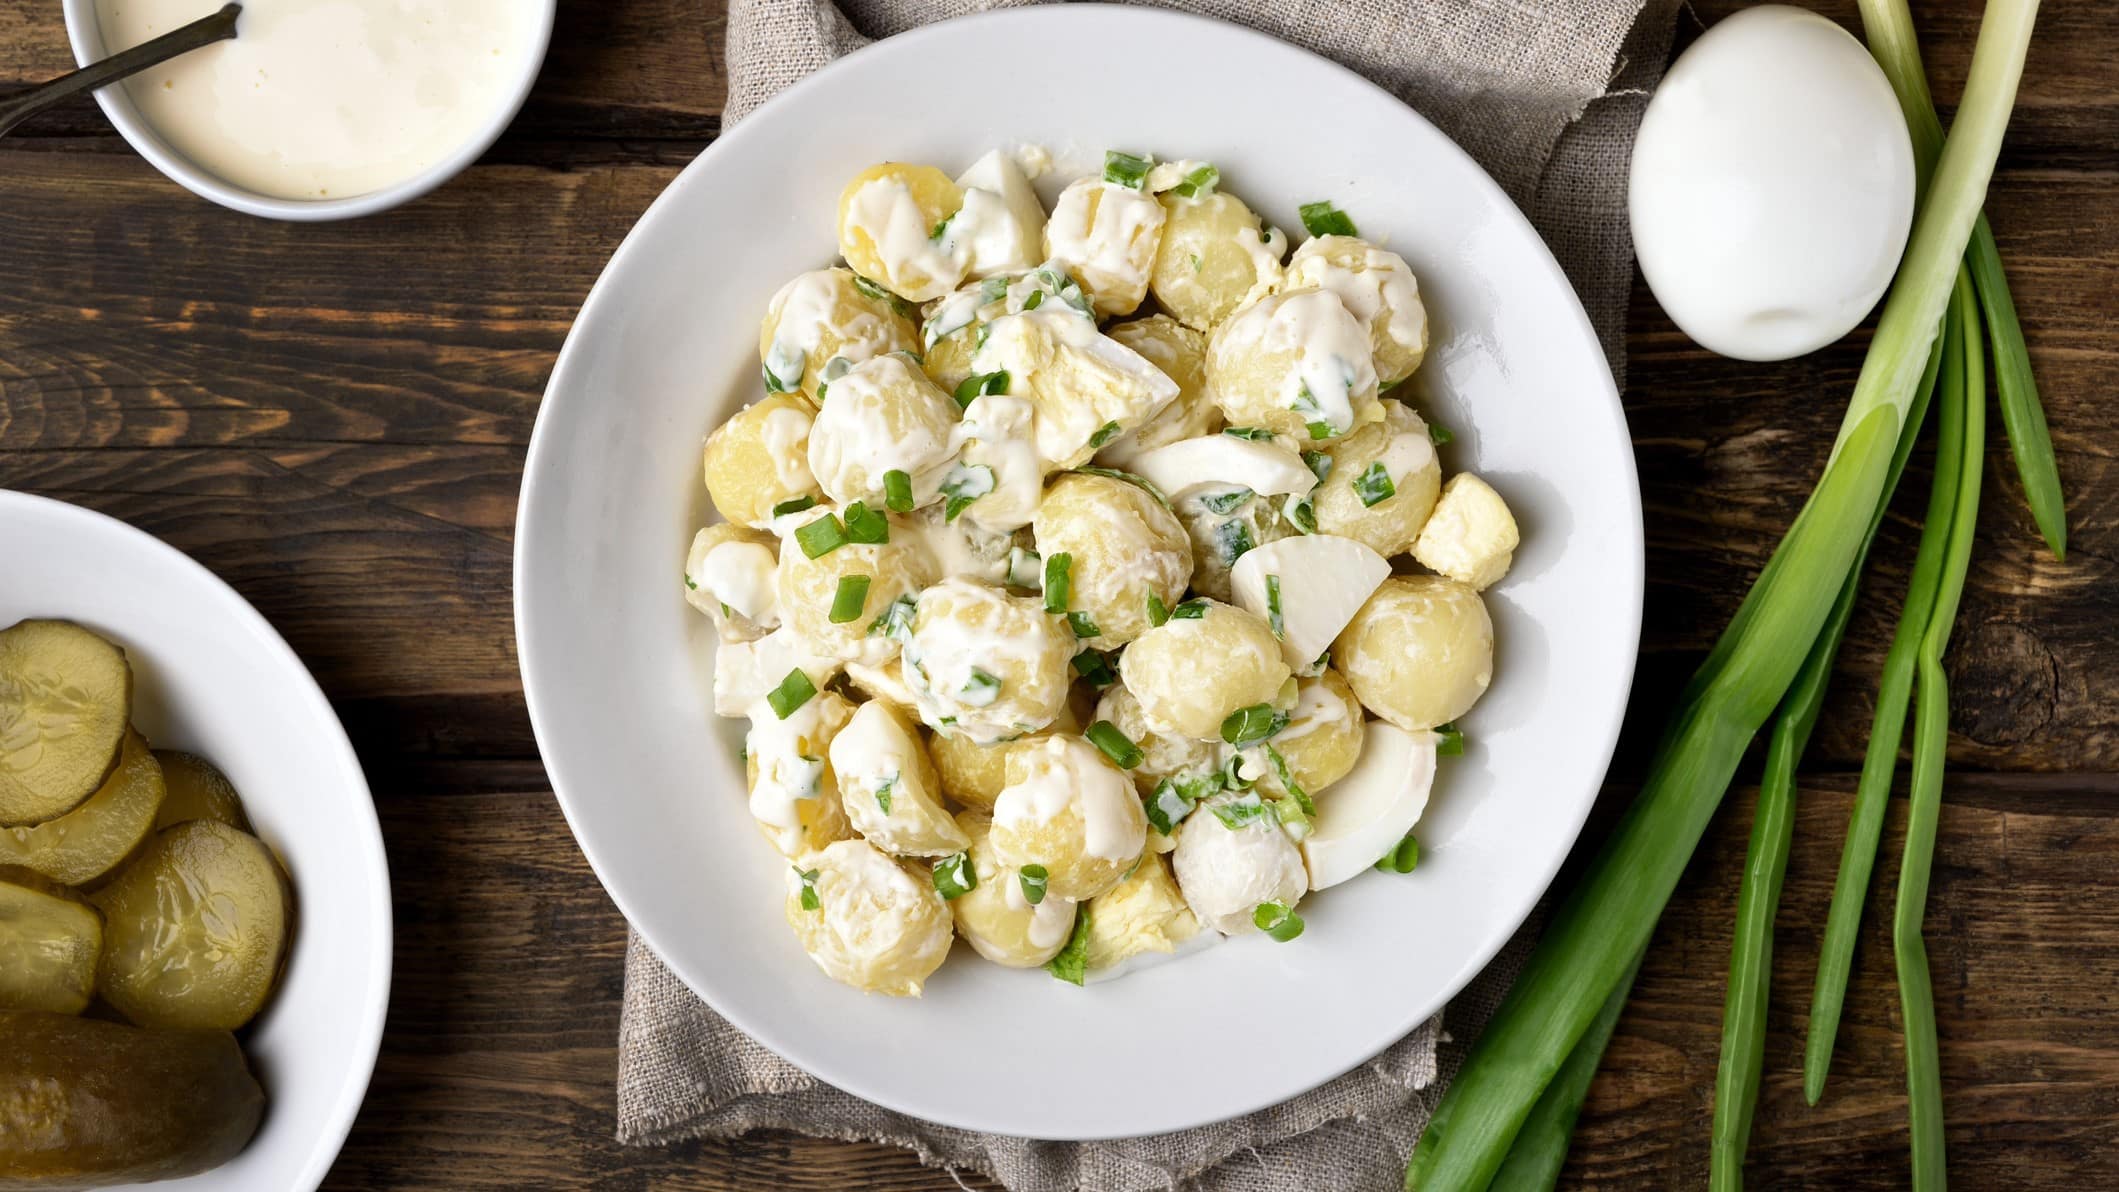 Kartoffelsalat mit Frühlingszwiebeln auf einem weißen Teller. Daneben liegen noch weitere Zutaten wie Eier, Frühlingszwiebeln und Gewürzgurken. Das Ganze auf einem hölzernen Untergrund.